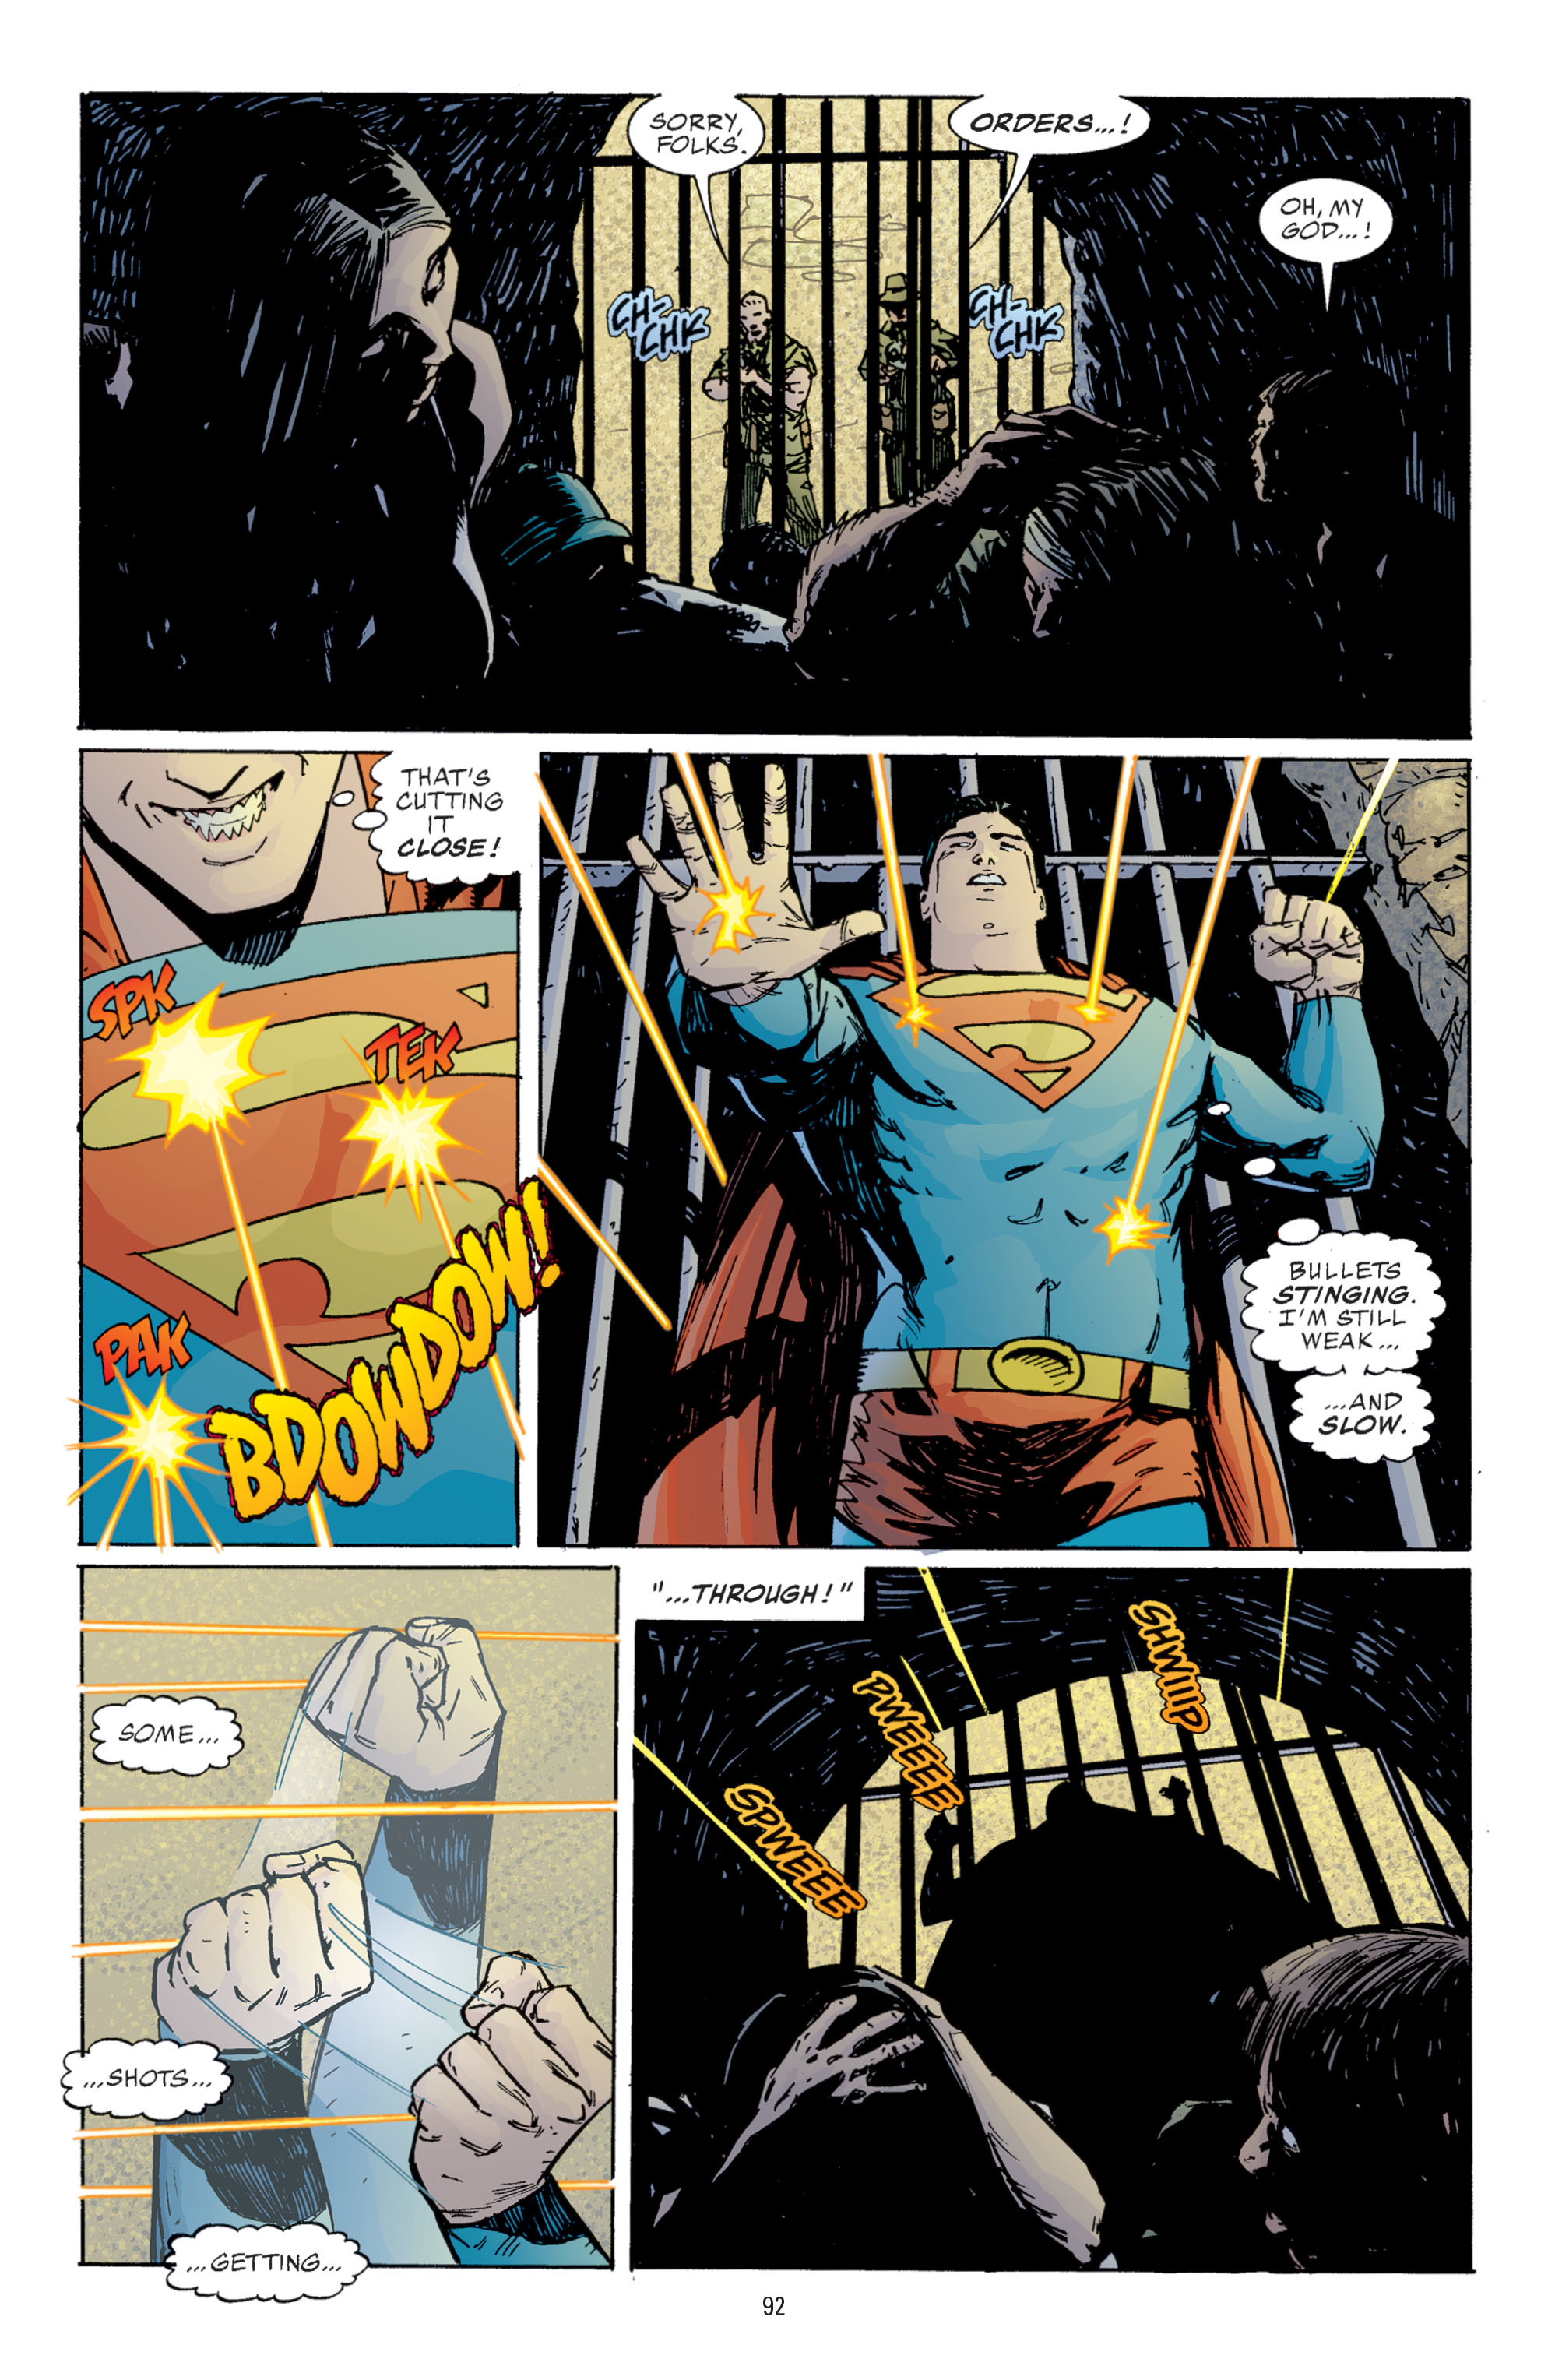 DC Comics/Dark Horse Comics: Justice League Full #1 - English 90